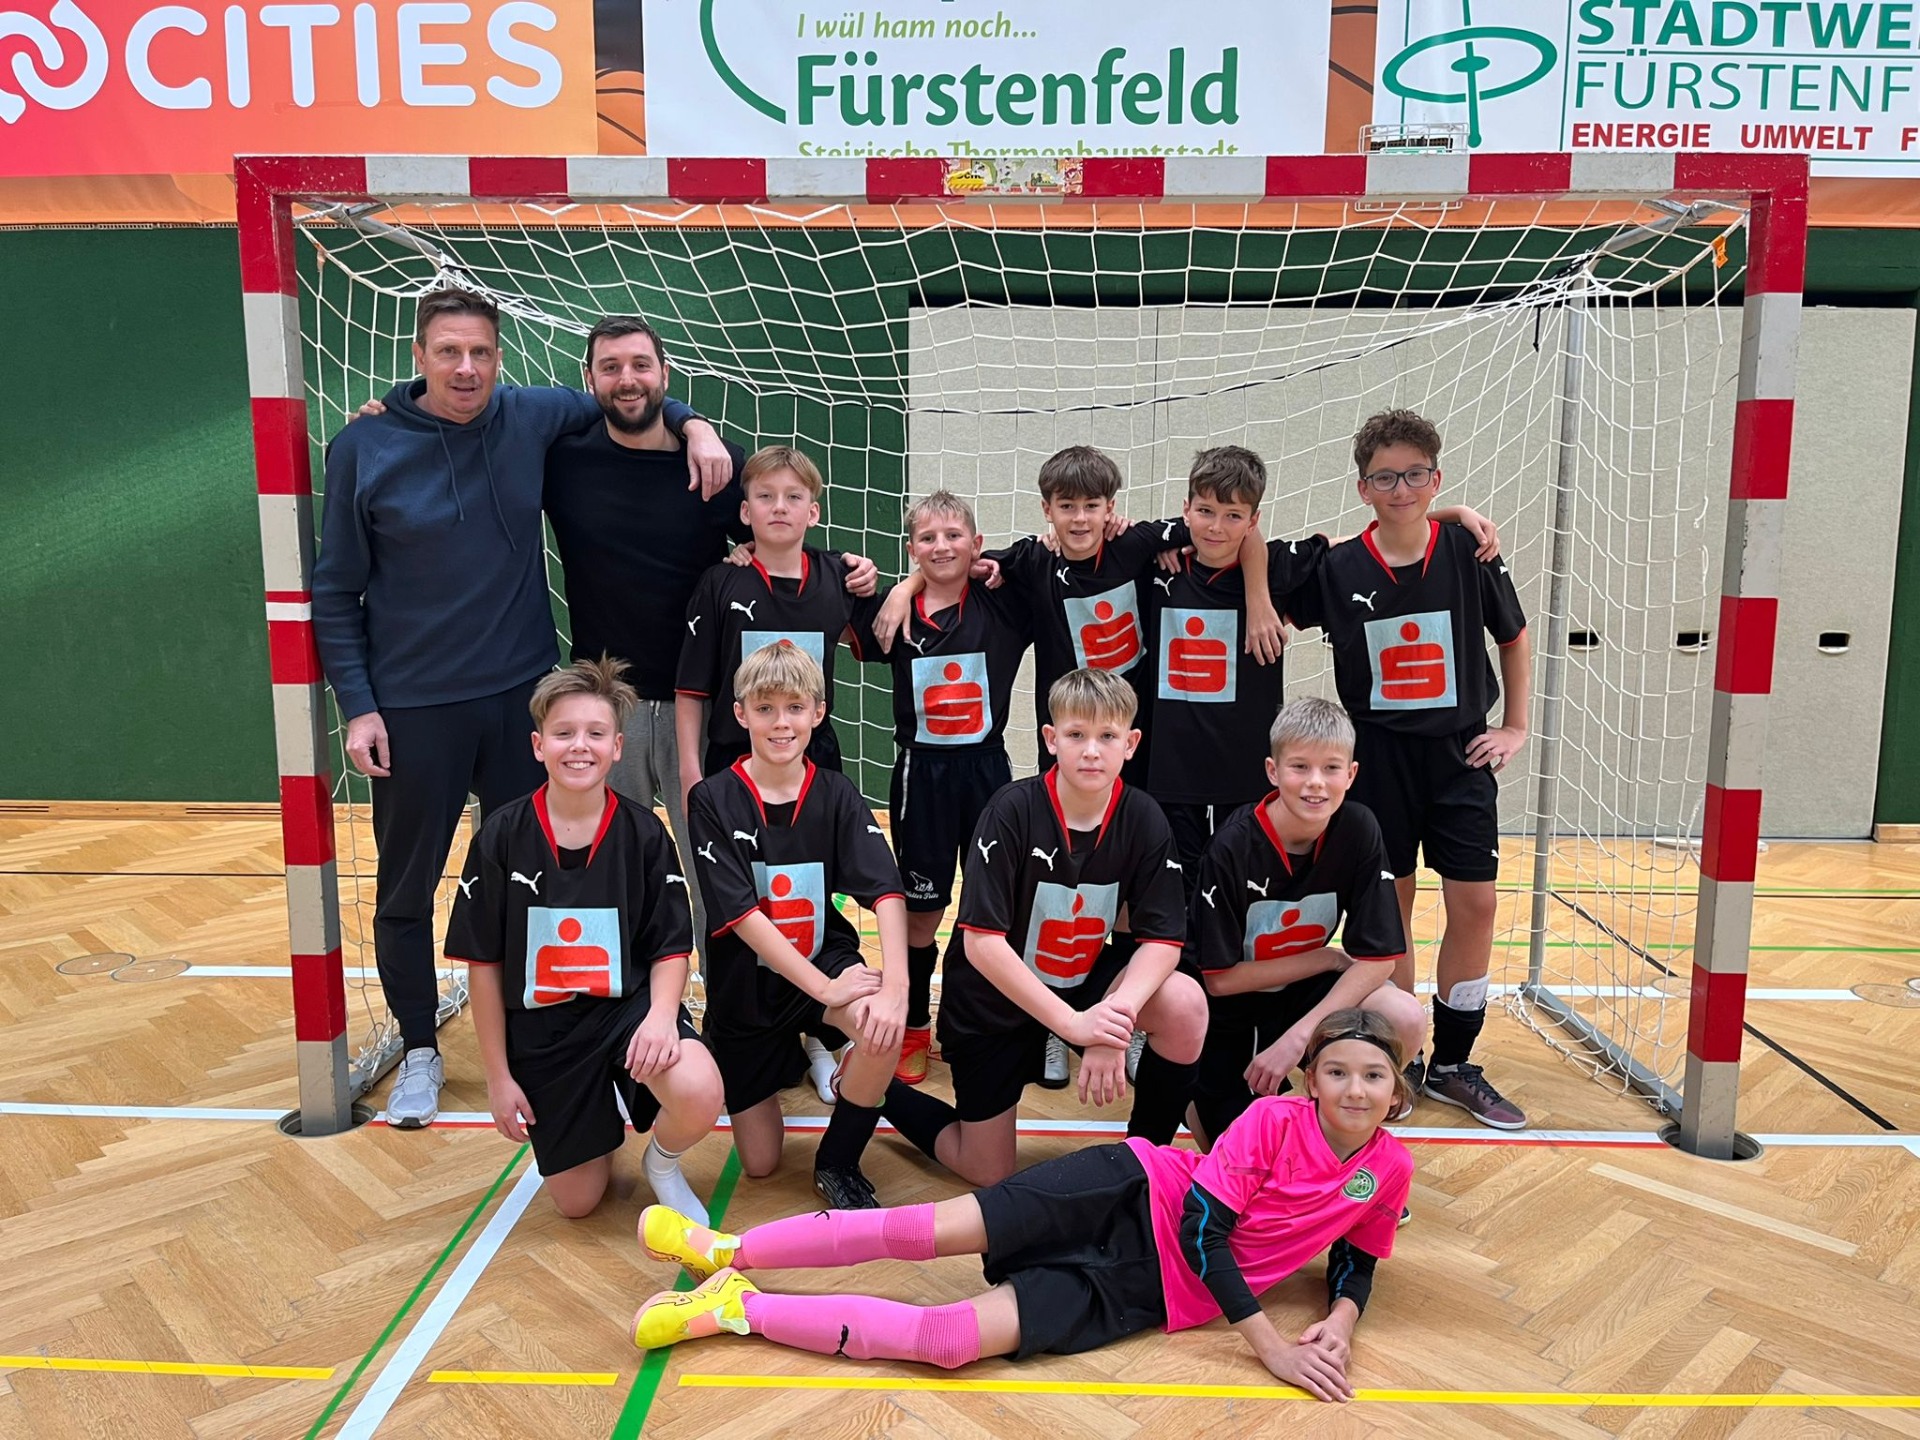 Erfolg beim Schülerliga-Futsal-Hallencup in Fürstenfeld - Bild 1